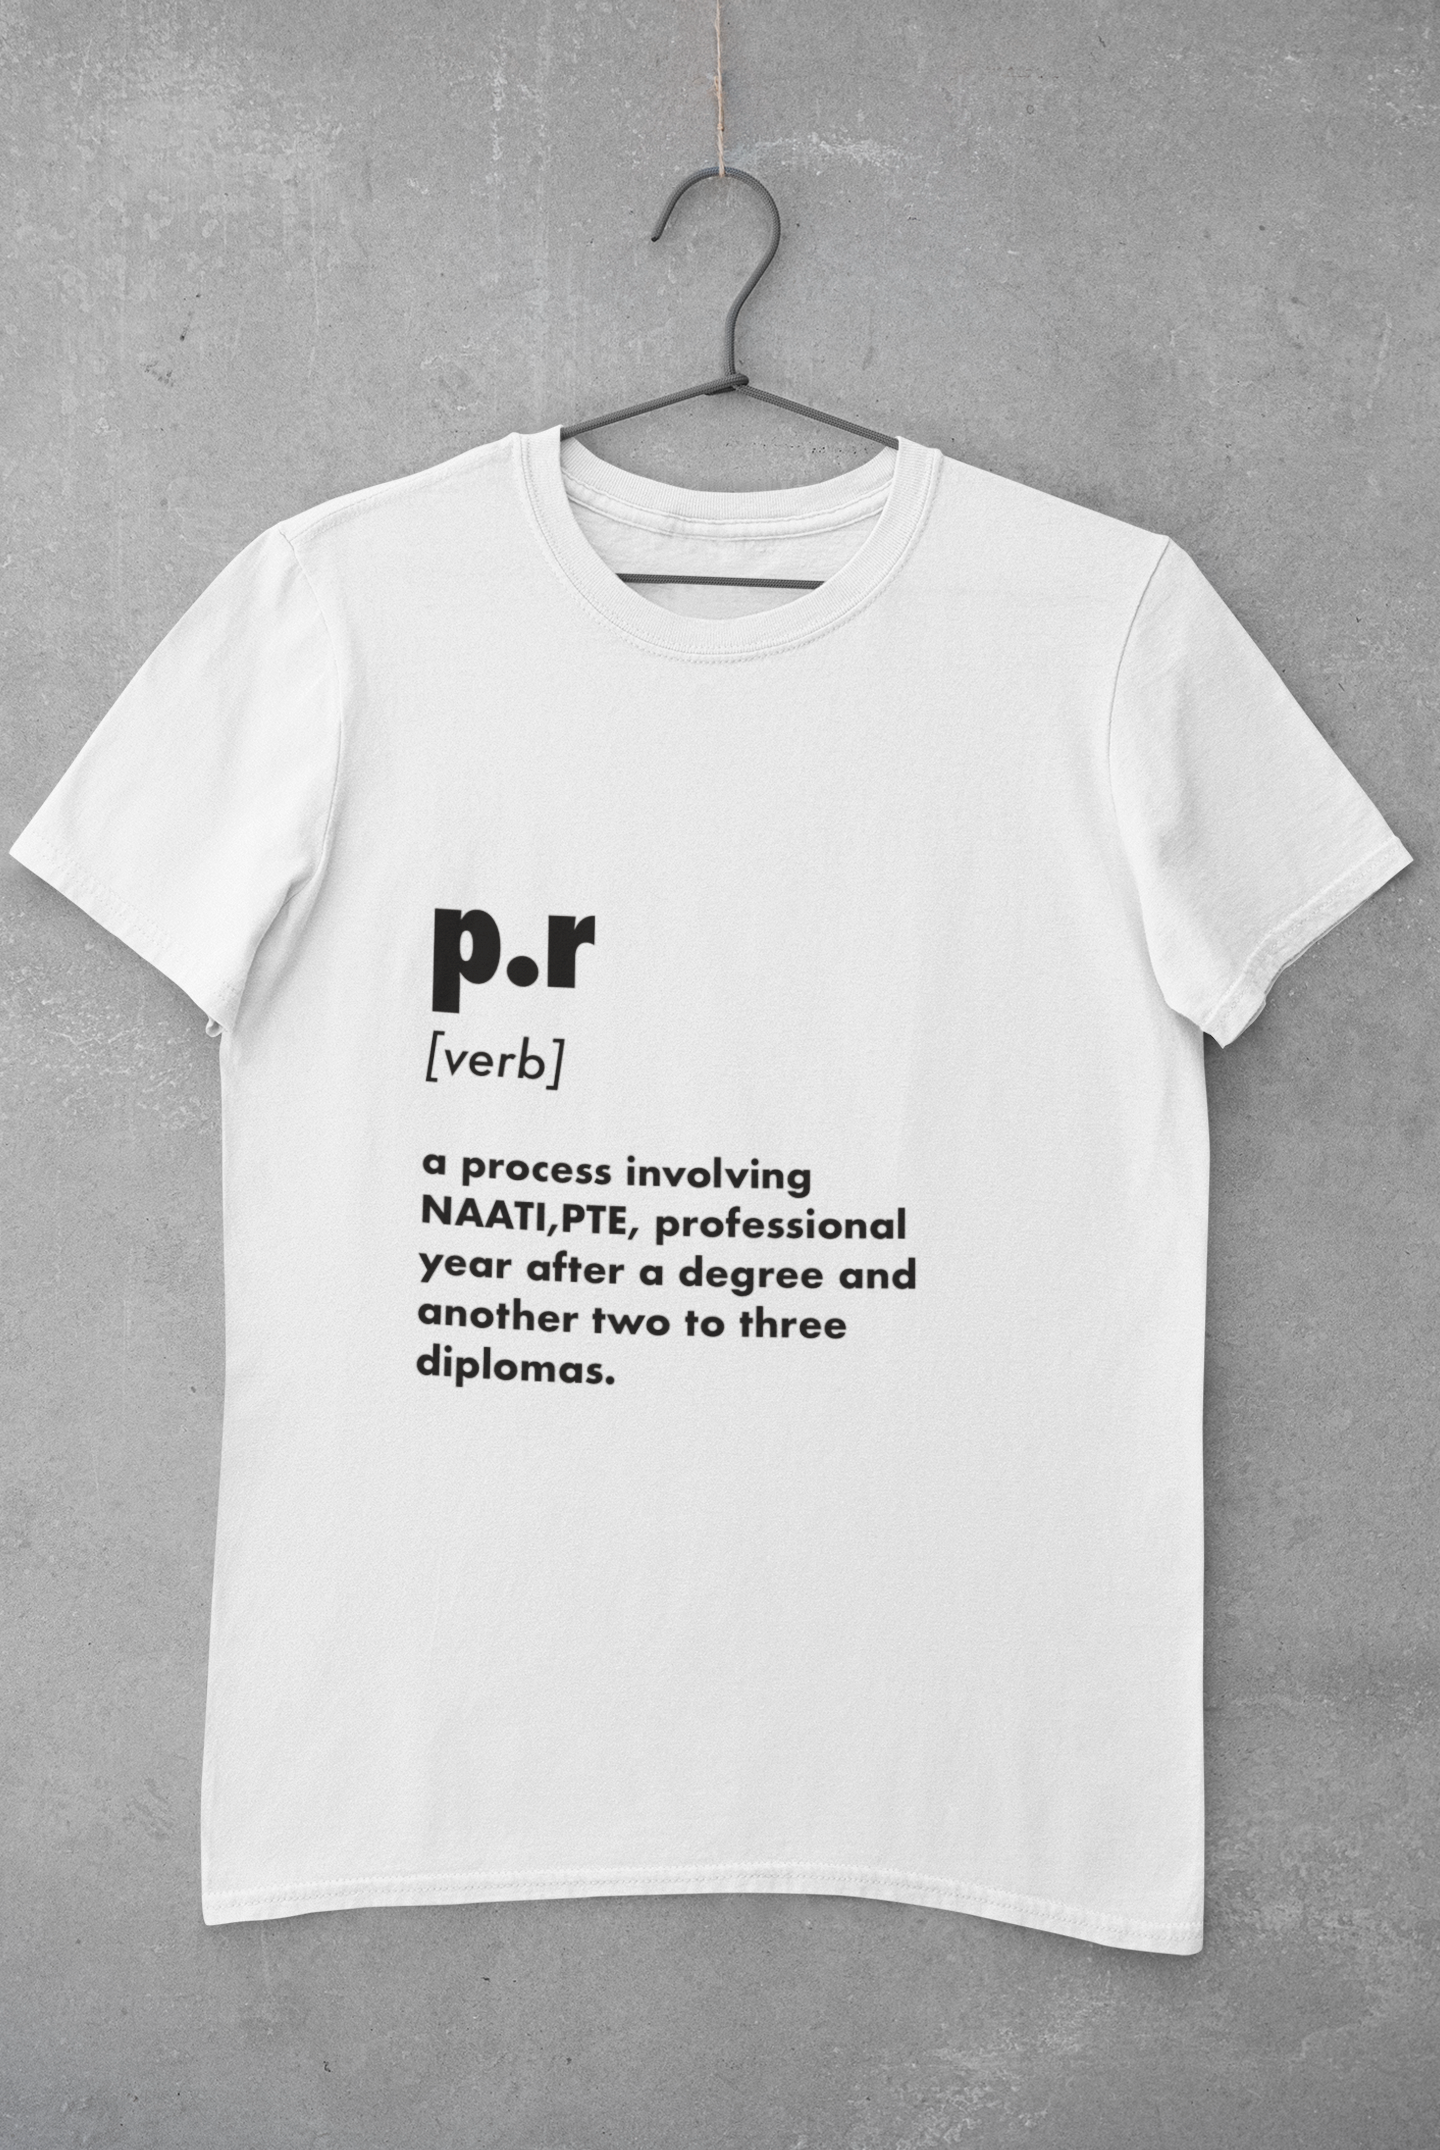 PR t-shirt